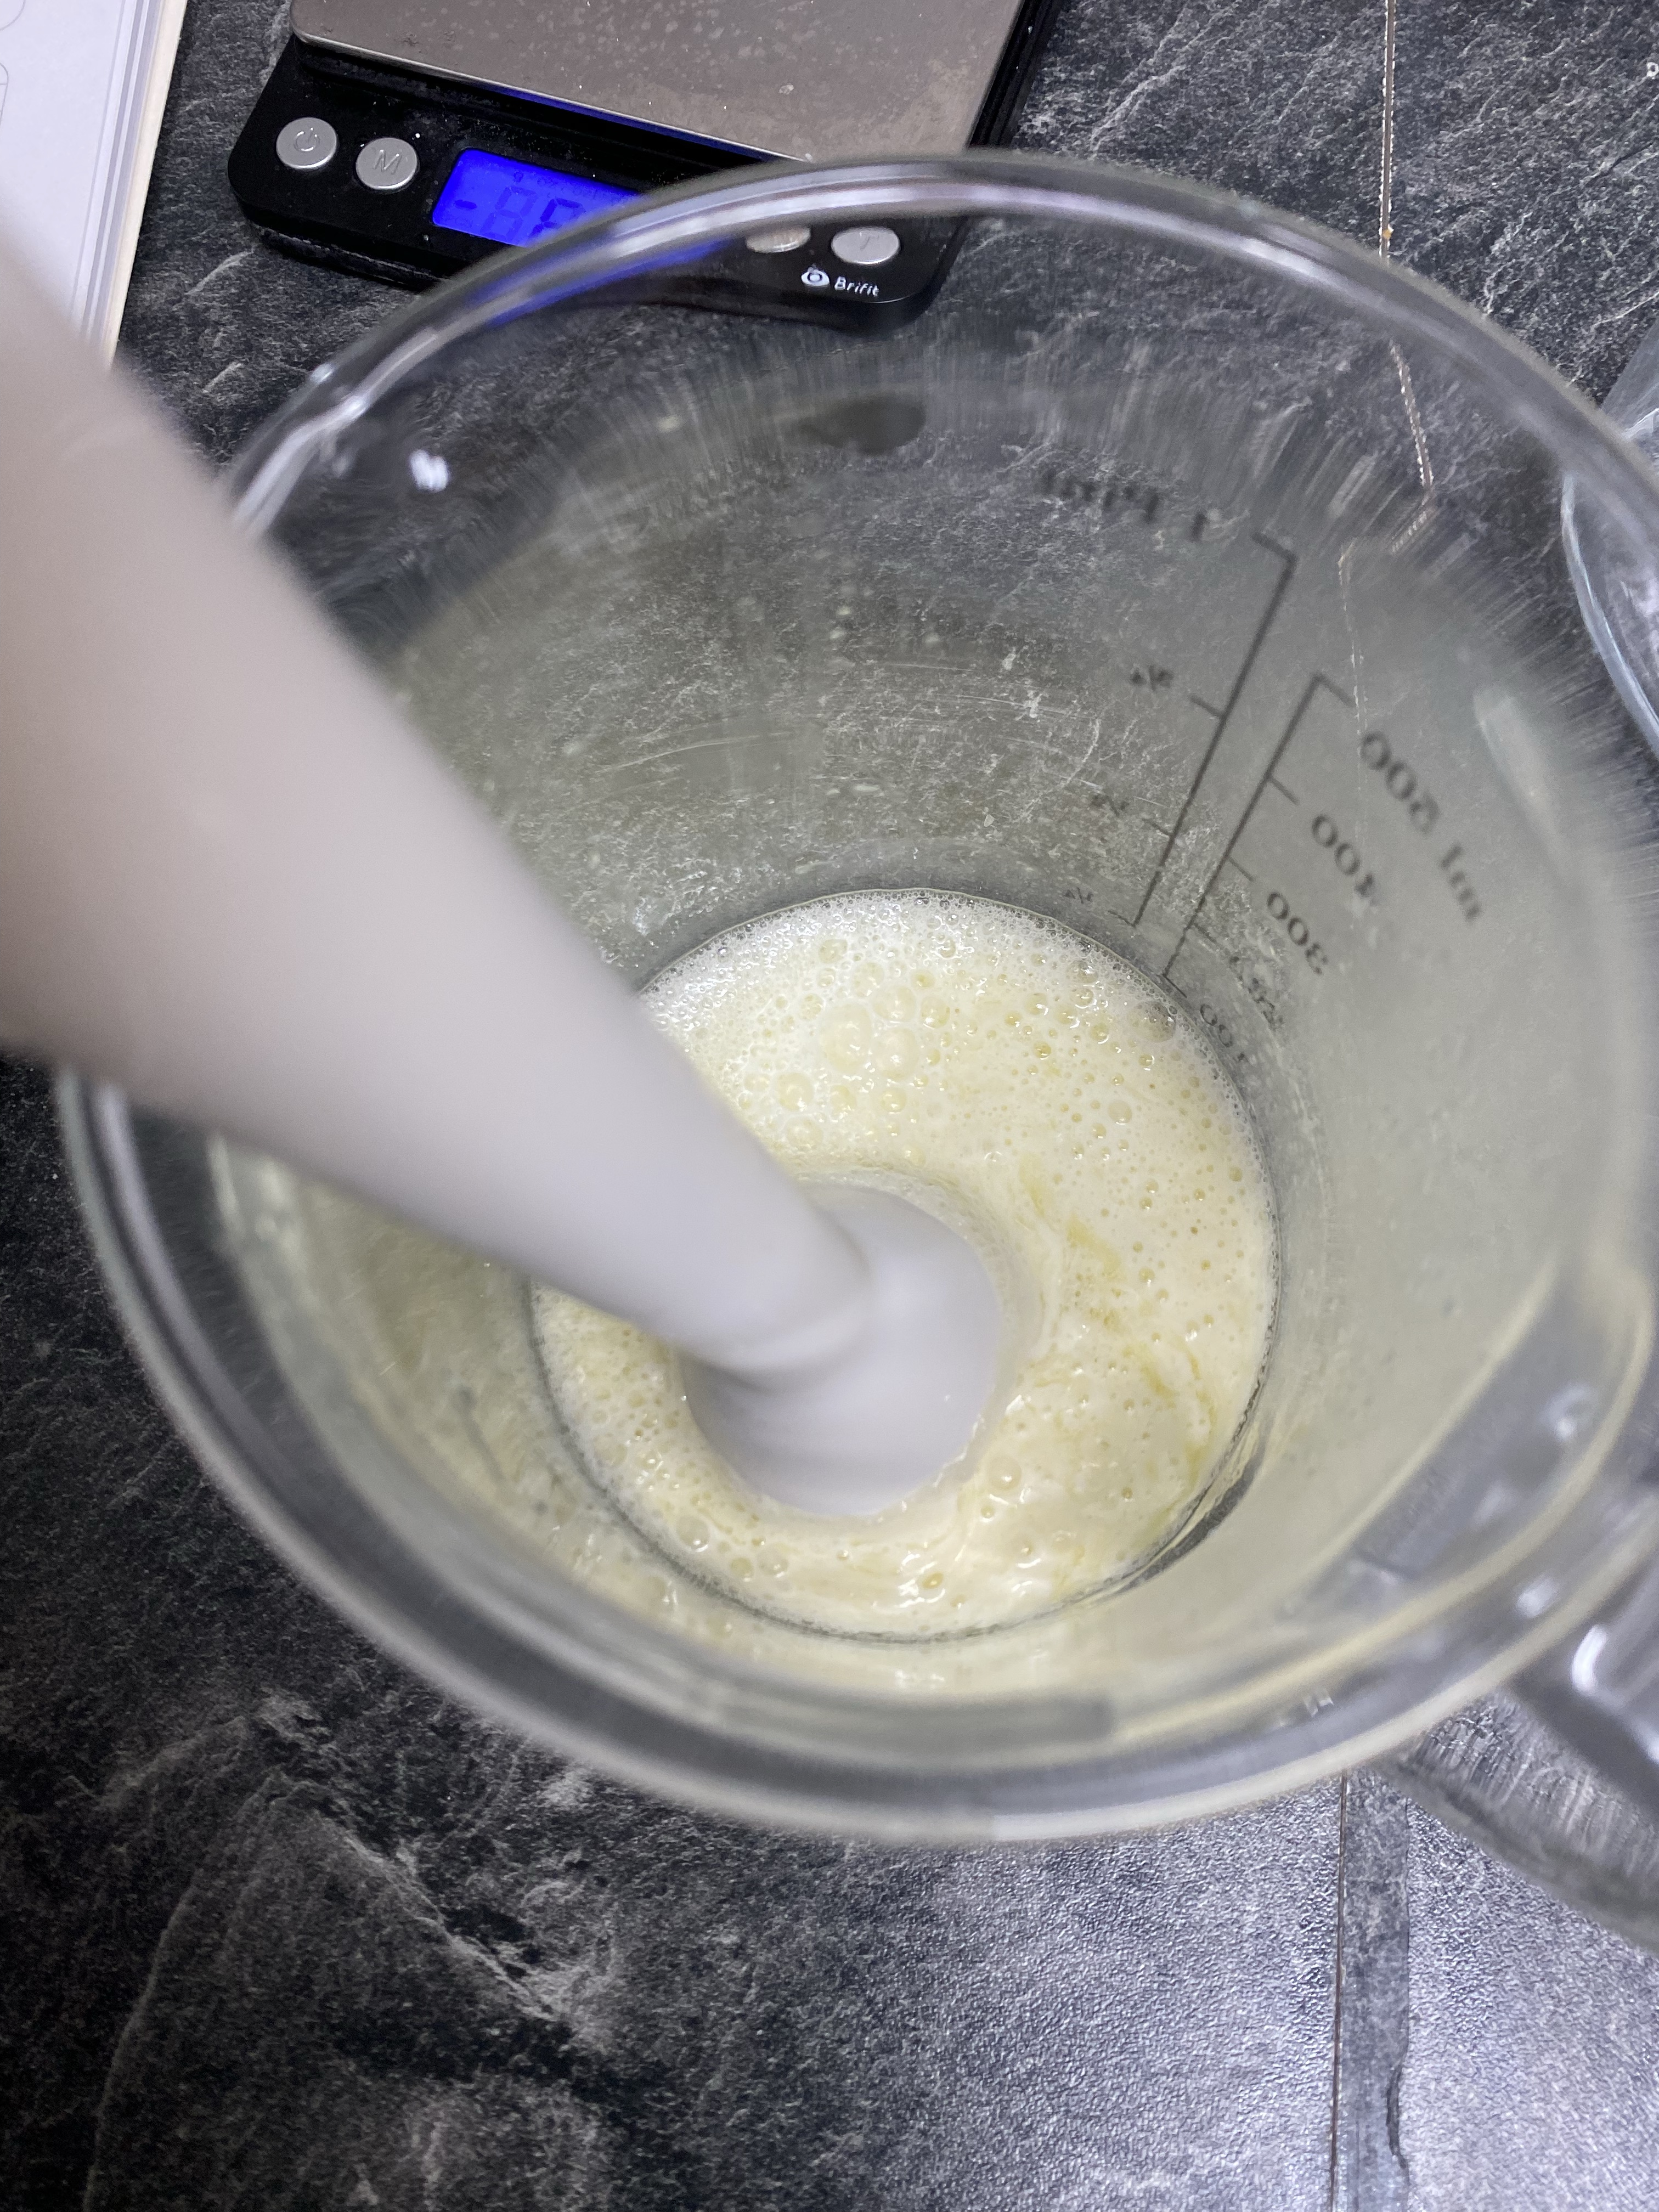 Fette, Hydrolat und Emulgator werden emulgiert um eine selbstgemachte Naturkosmetik Creme zu erhalten.